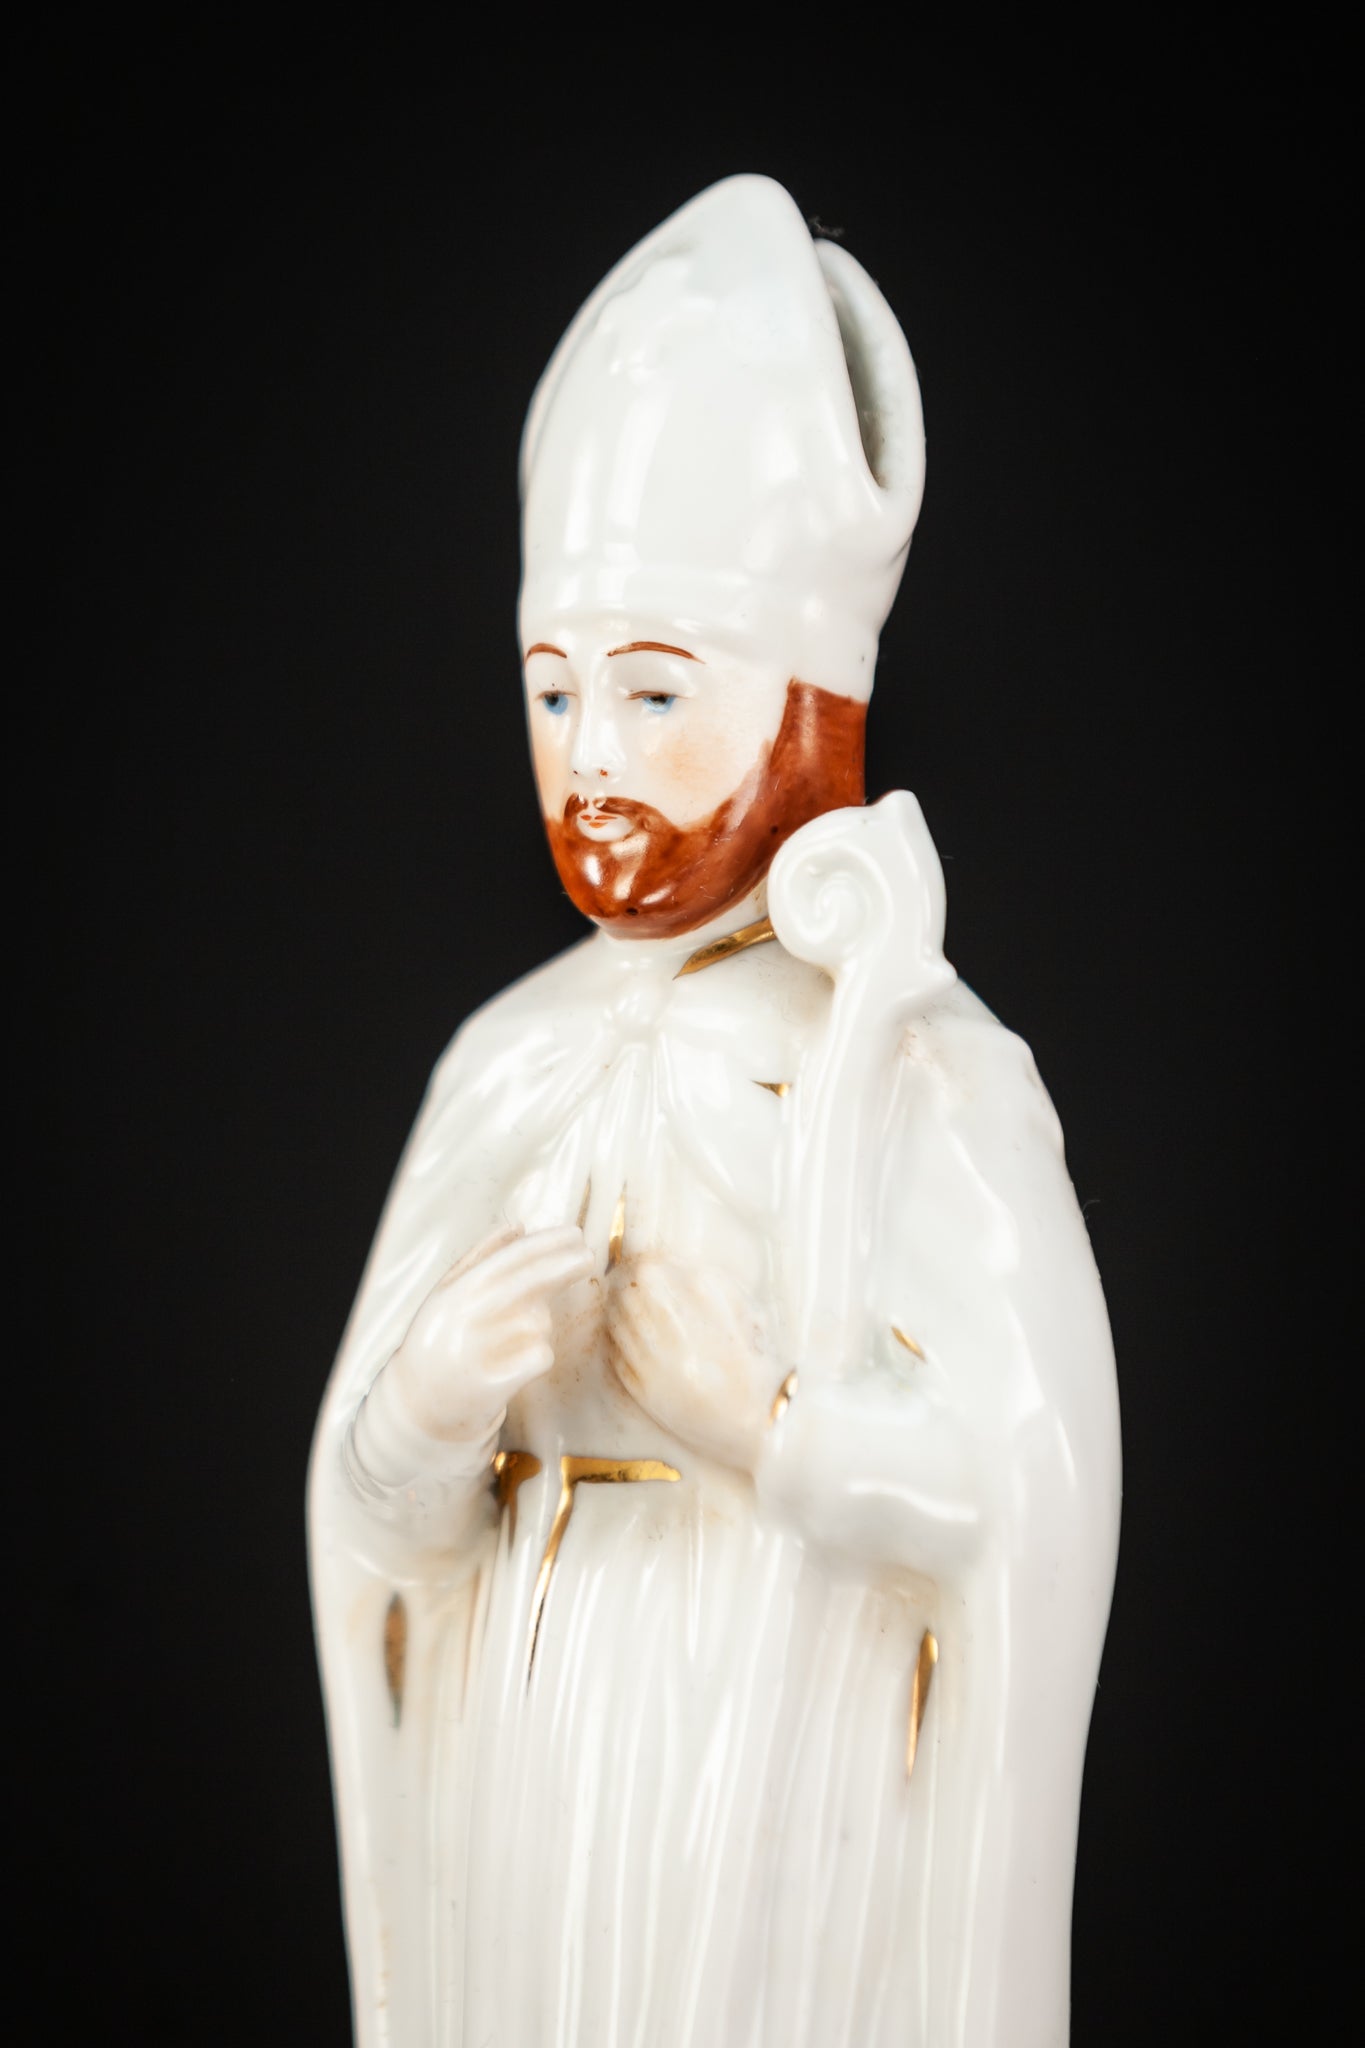 St Nicholas Porcelain Statue 7.9”